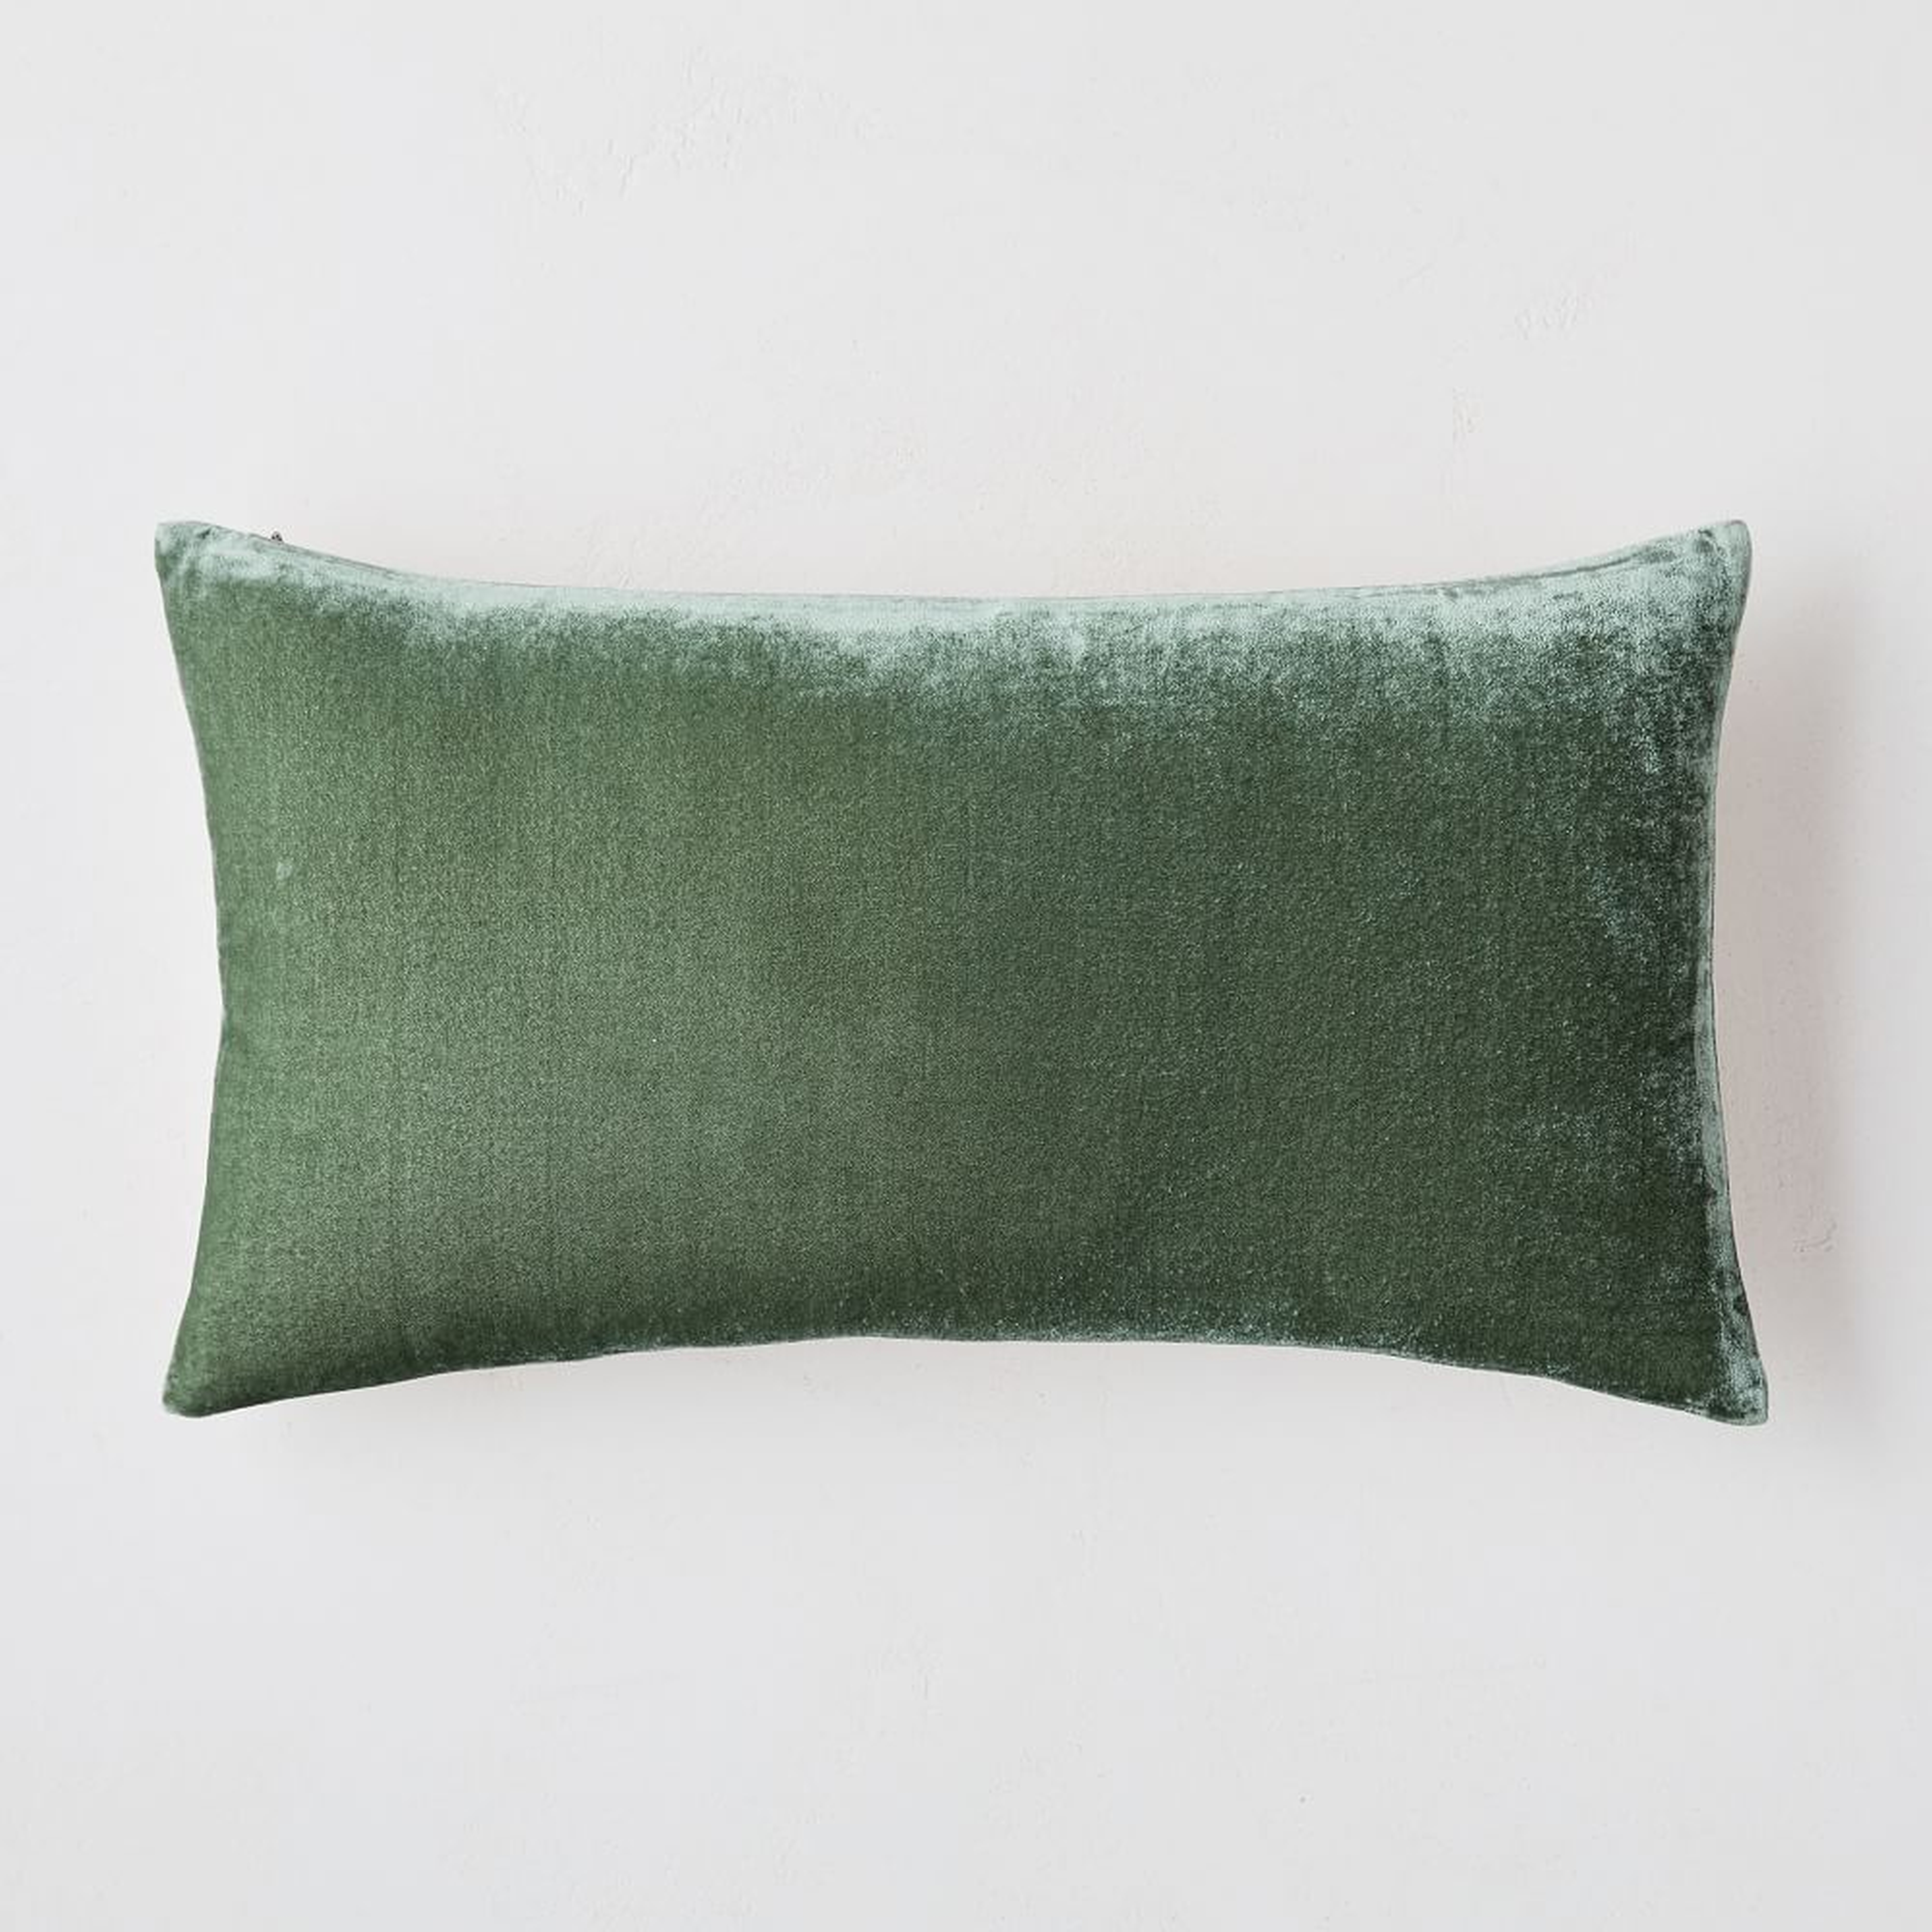 Lush Velvet Pillow Cover, 12"x21", Eucalyptus, Set Of 2 - West Elm